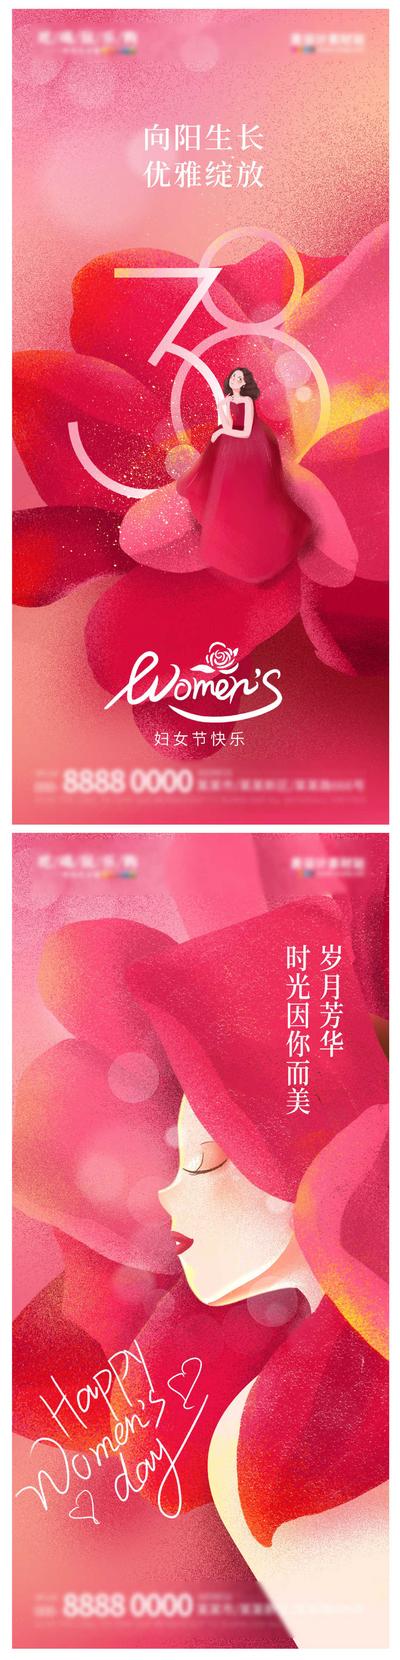 南门网 38妇女节女神节海报